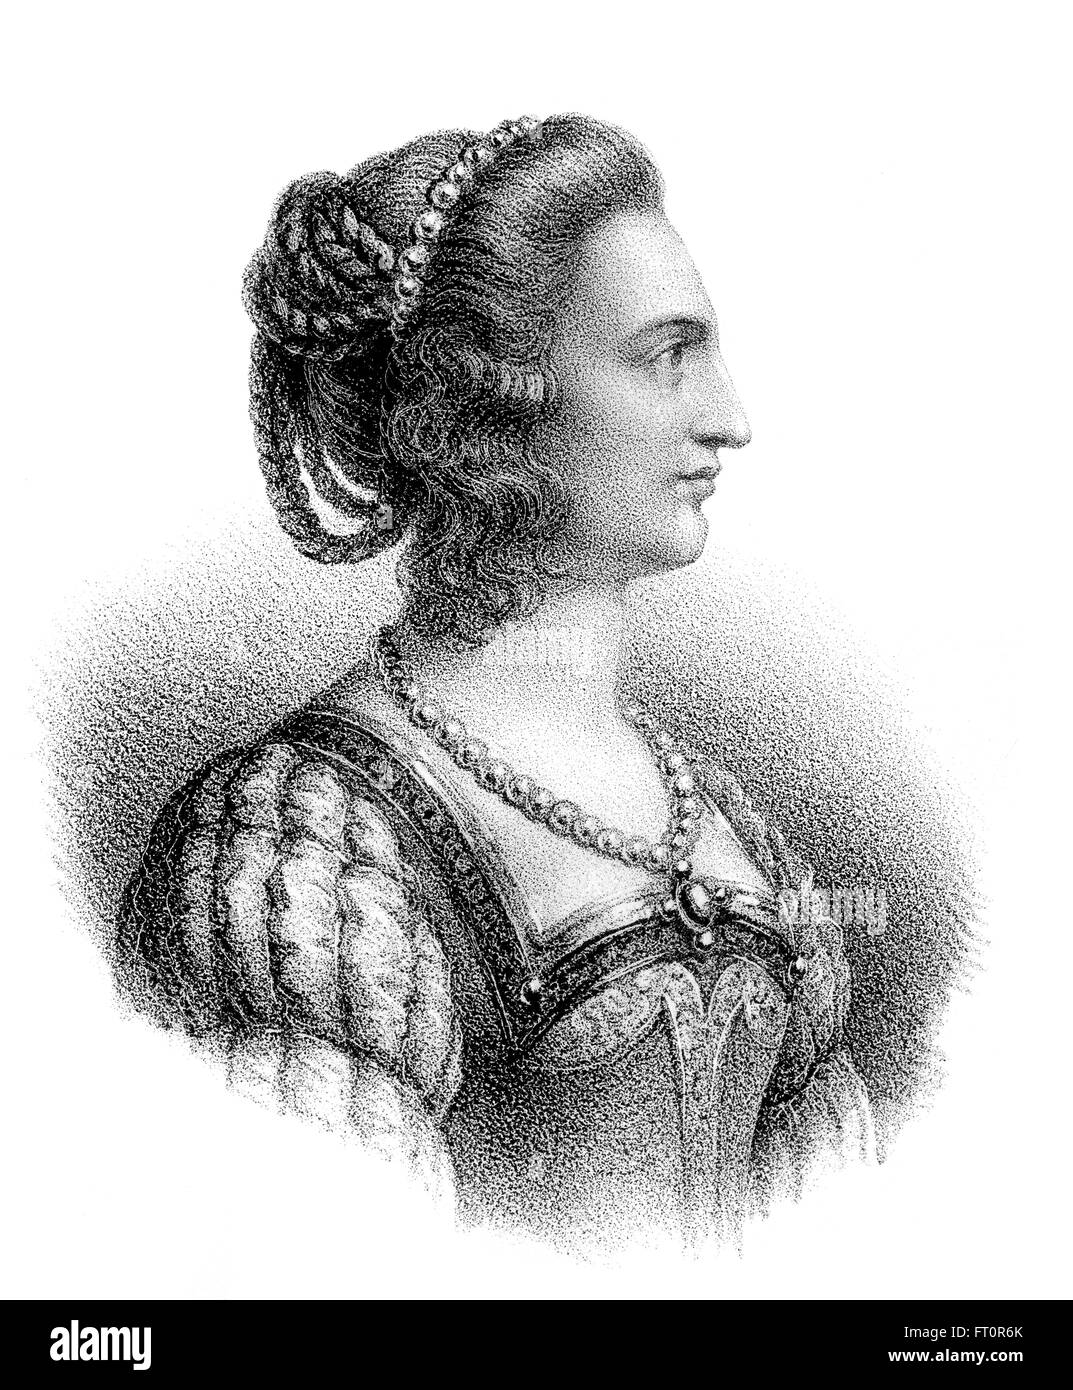 Bilichild o Bilichildis, Bilichilde, Blithilde, la moglie del re frankish di Neustria e Borgogna Childeric II Foto Stock